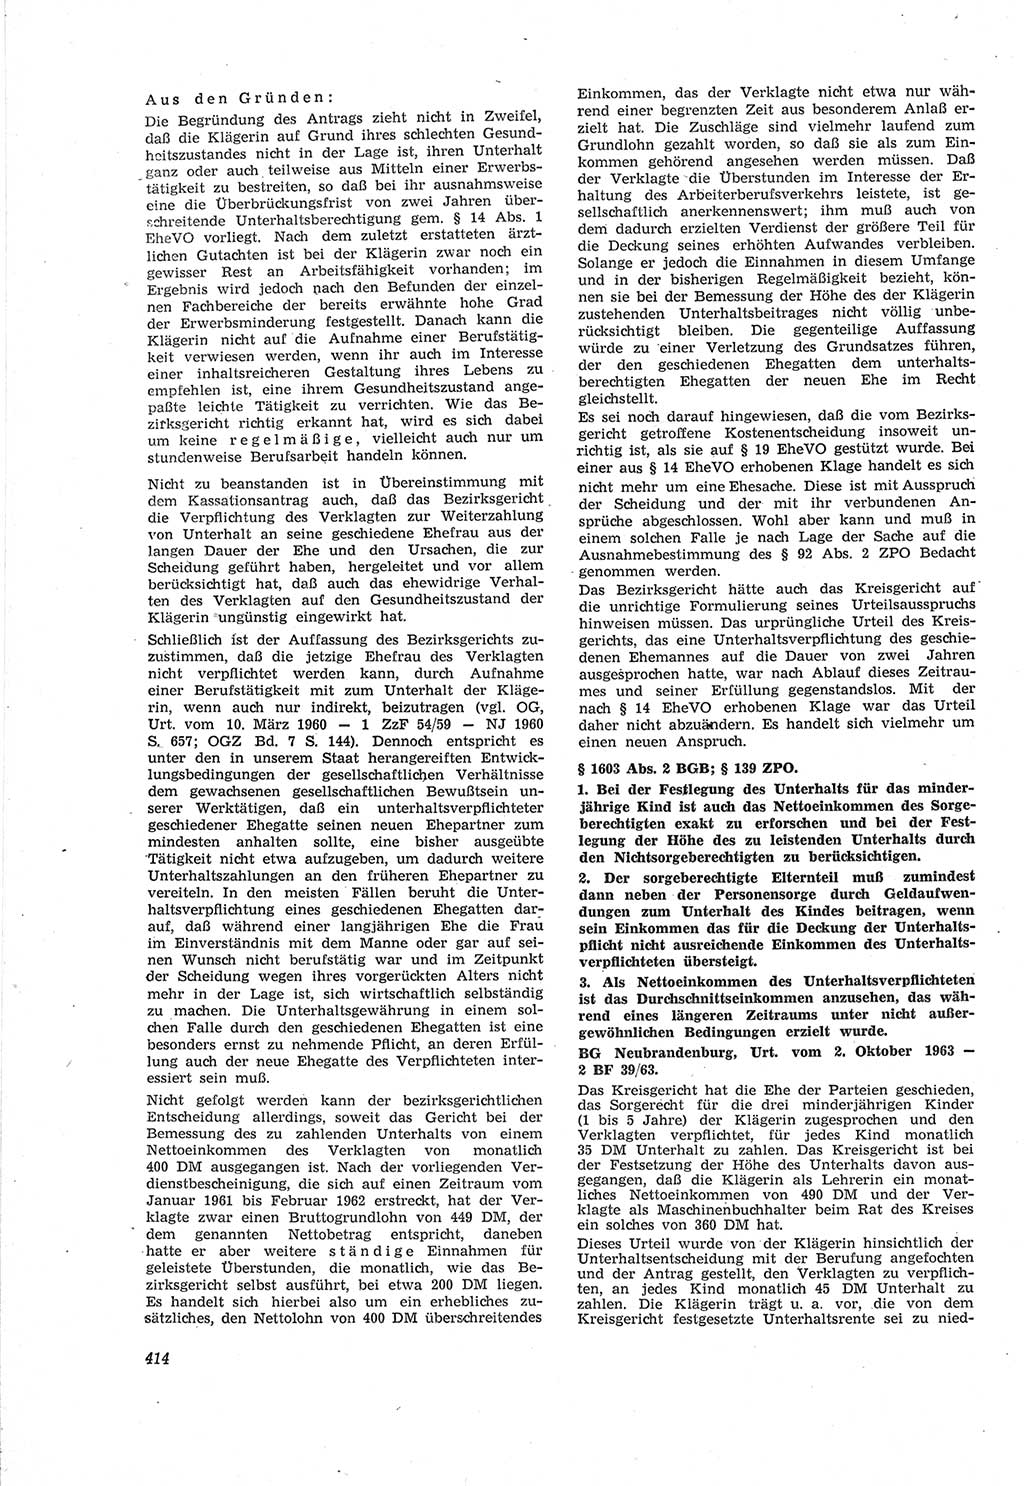 Neue Justiz (NJ), Zeitschrift für Recht und Rechtswissenschaft [Deutsche Demokratische Republik (DDR)], 18. Jahrgang 1964, Seite 414 (NJ DDR 1964, S. 414)